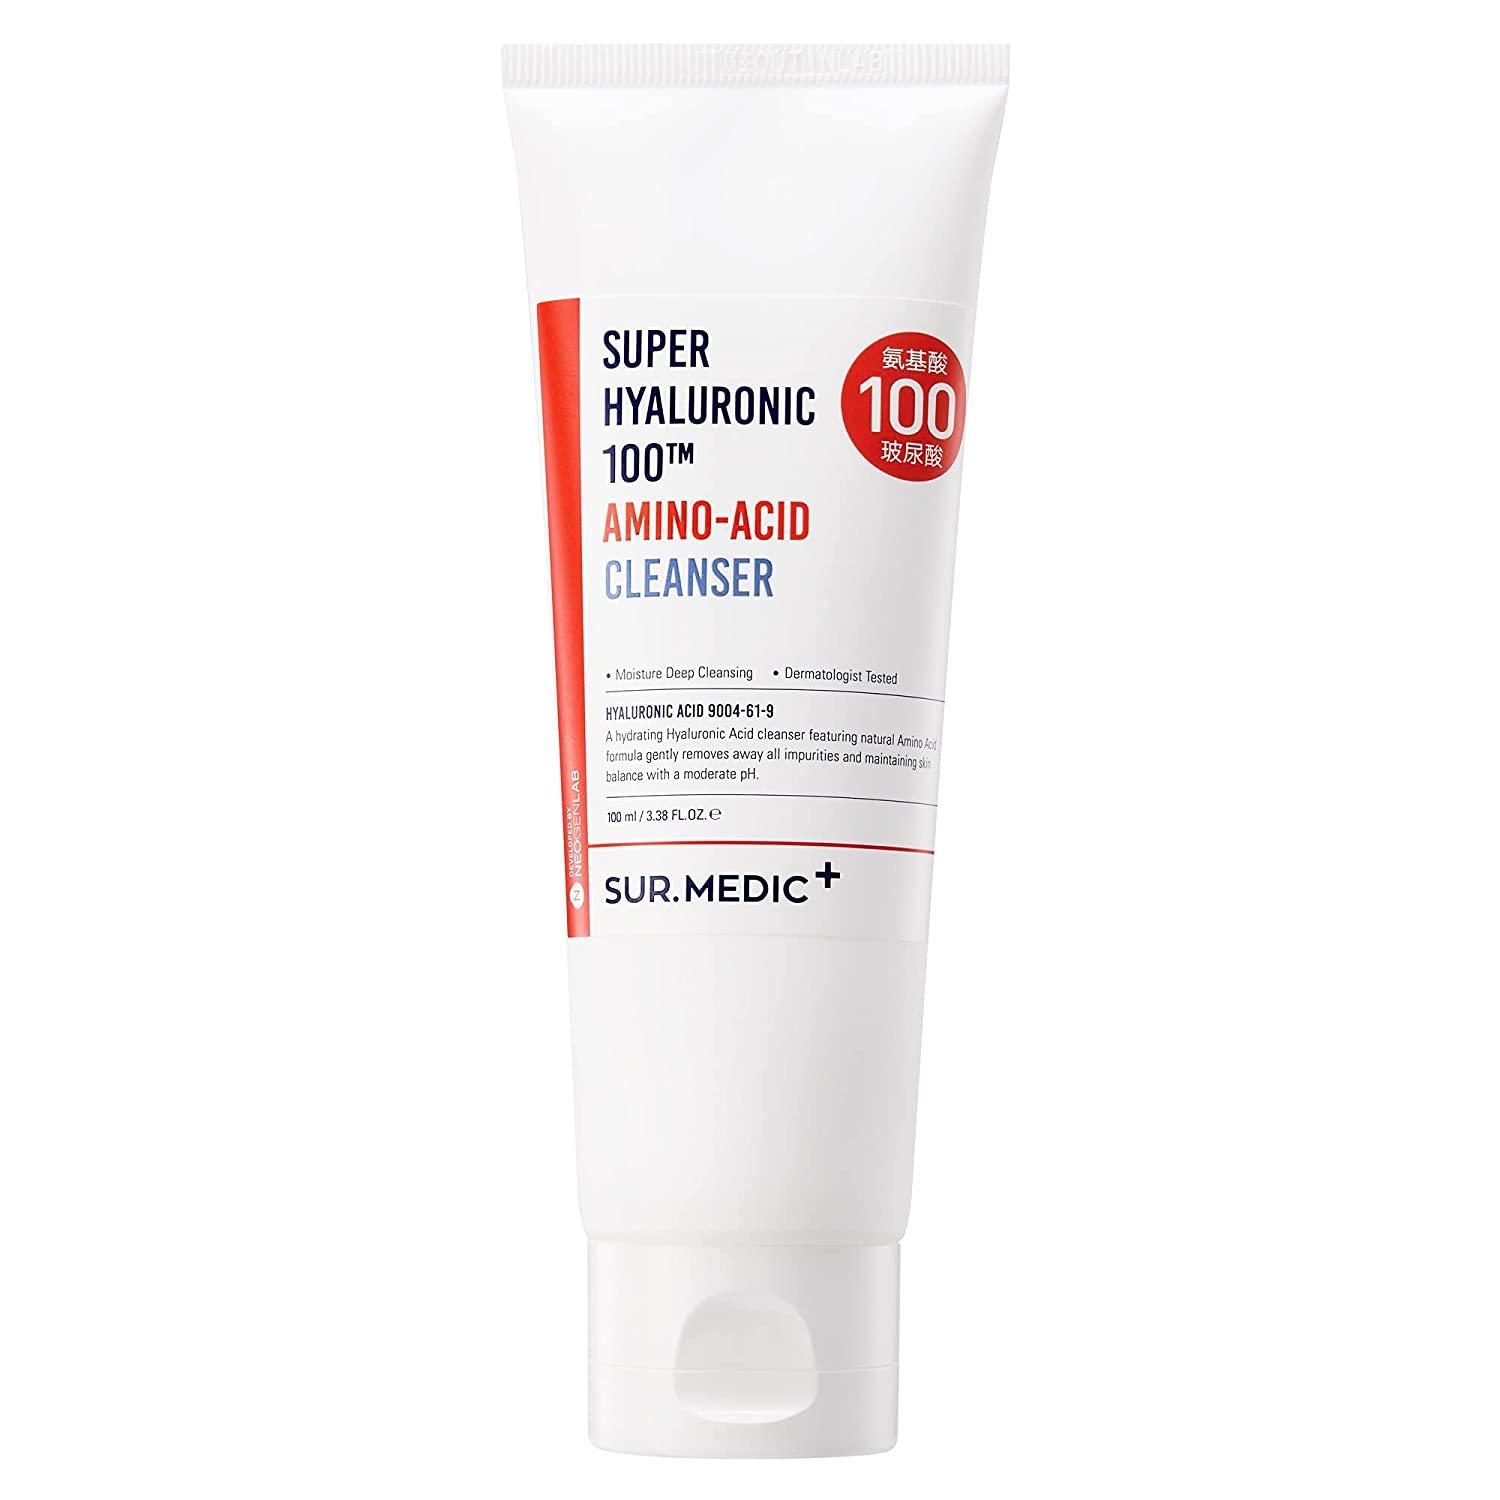 Super Hyaluronic 100Tm Amino-Acid Cleanser